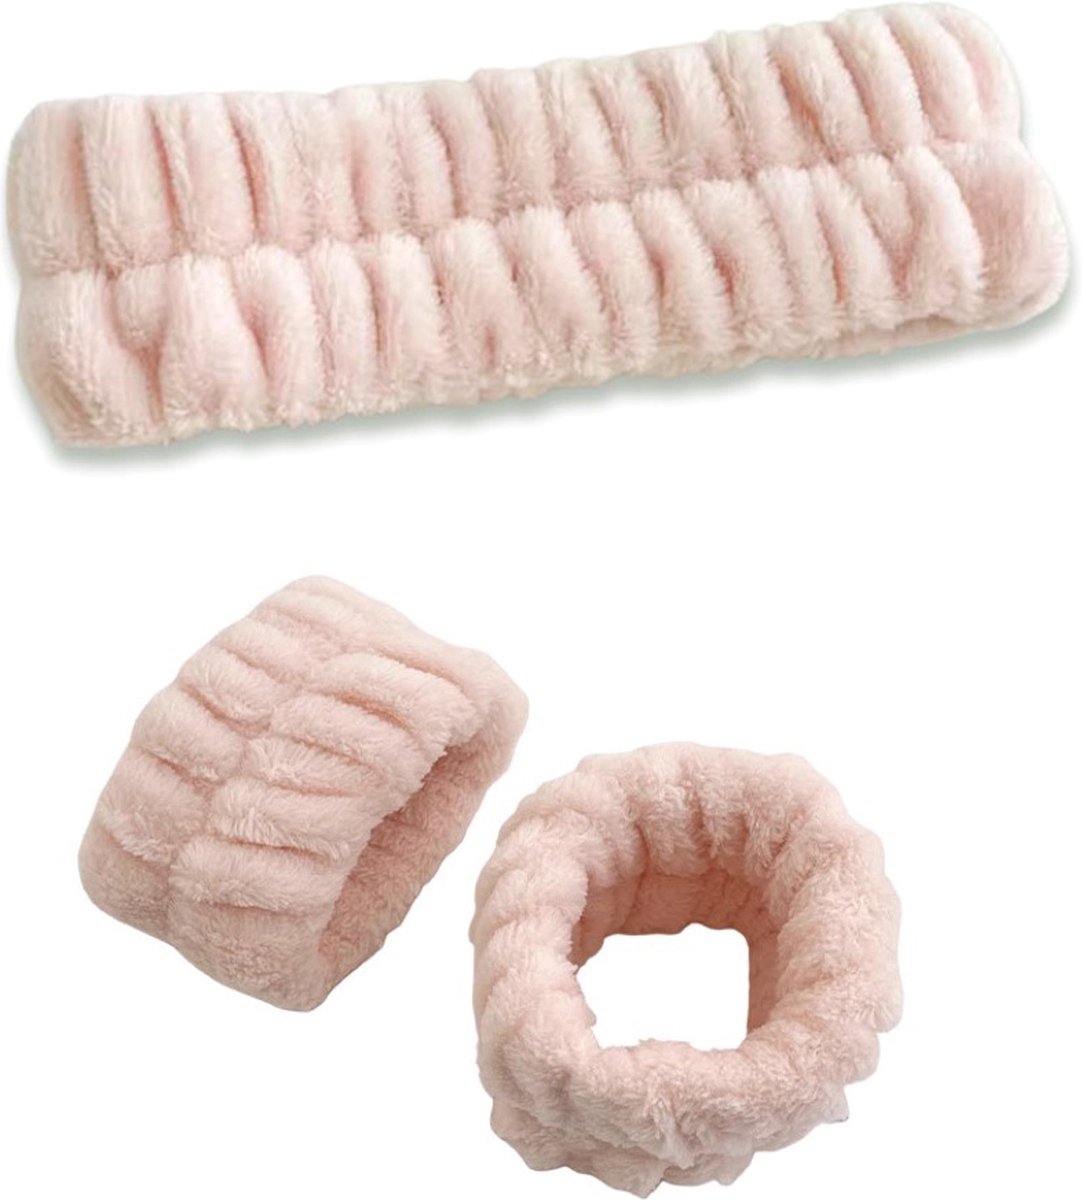 Ainy Haarband en Polsbandjes Set Roze - Hoofdband voor wassen gezicht - gemakkelijk tijdens gezichtsreiniging, gezichtsverzorging en make up sessie - Waterabsorberend en wasbaar